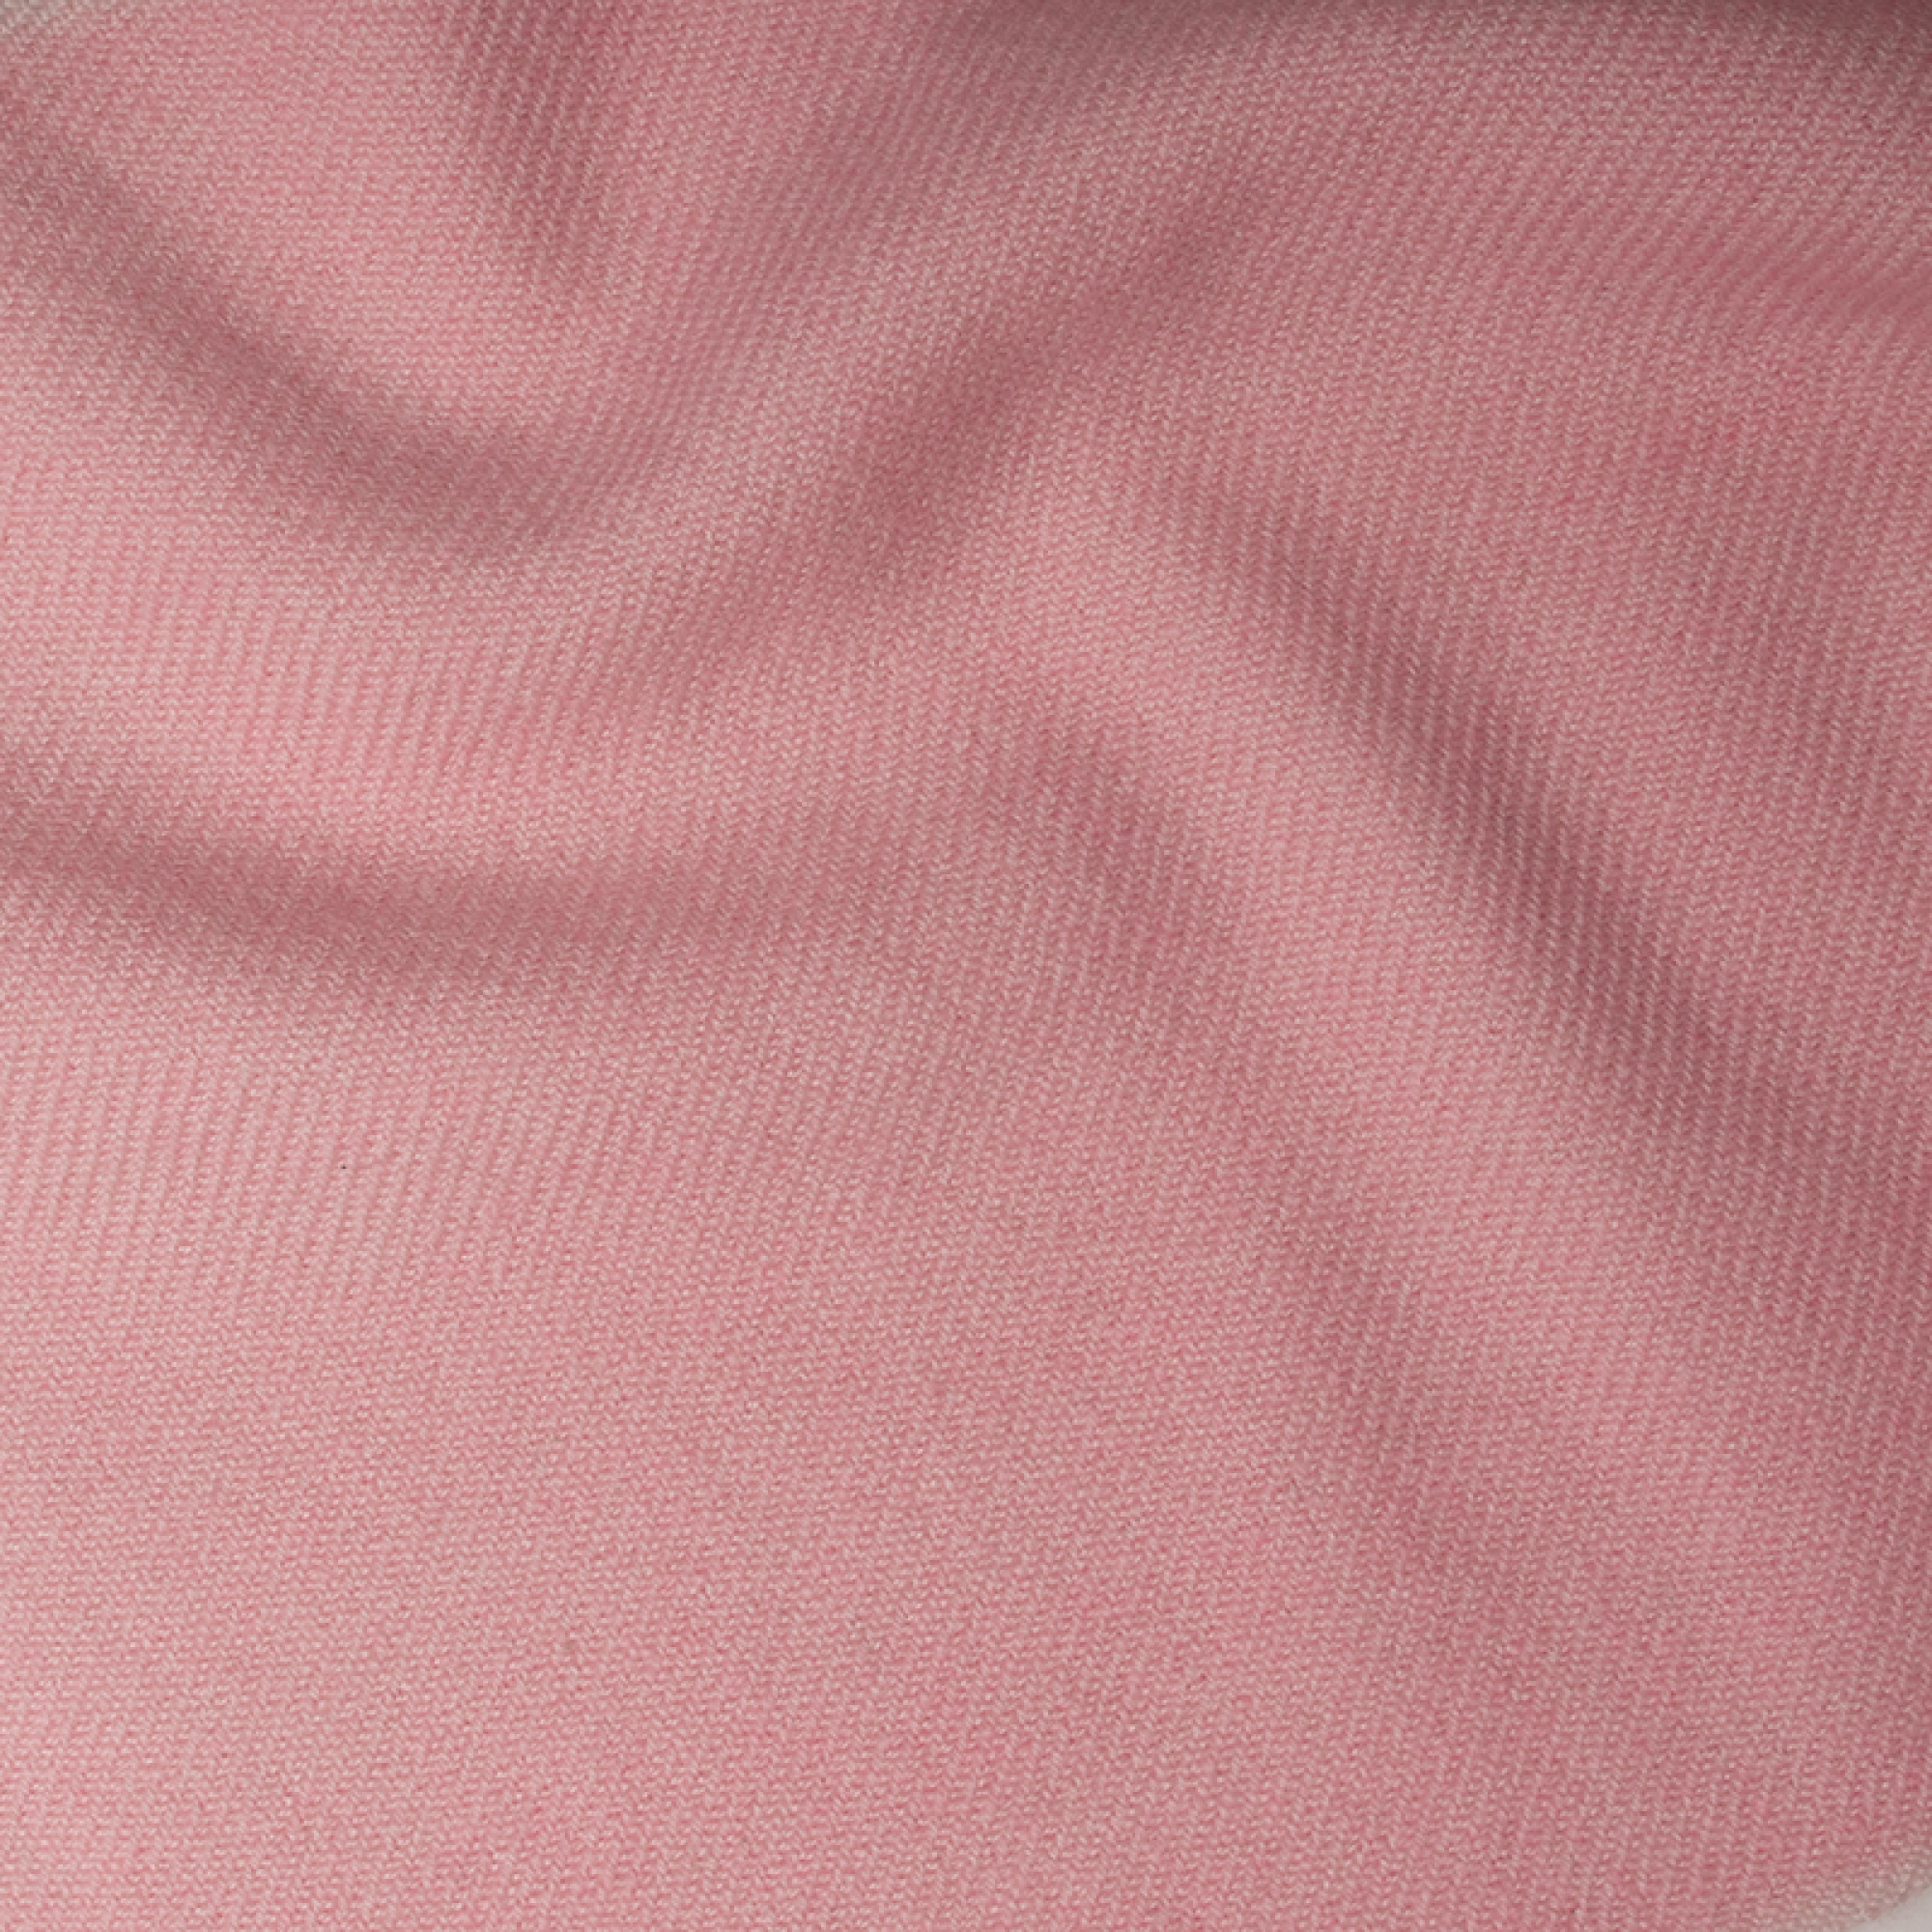 Cashmere uomo toodoo plain xl 240 x 260 rosa confetto 240 x 260 cm